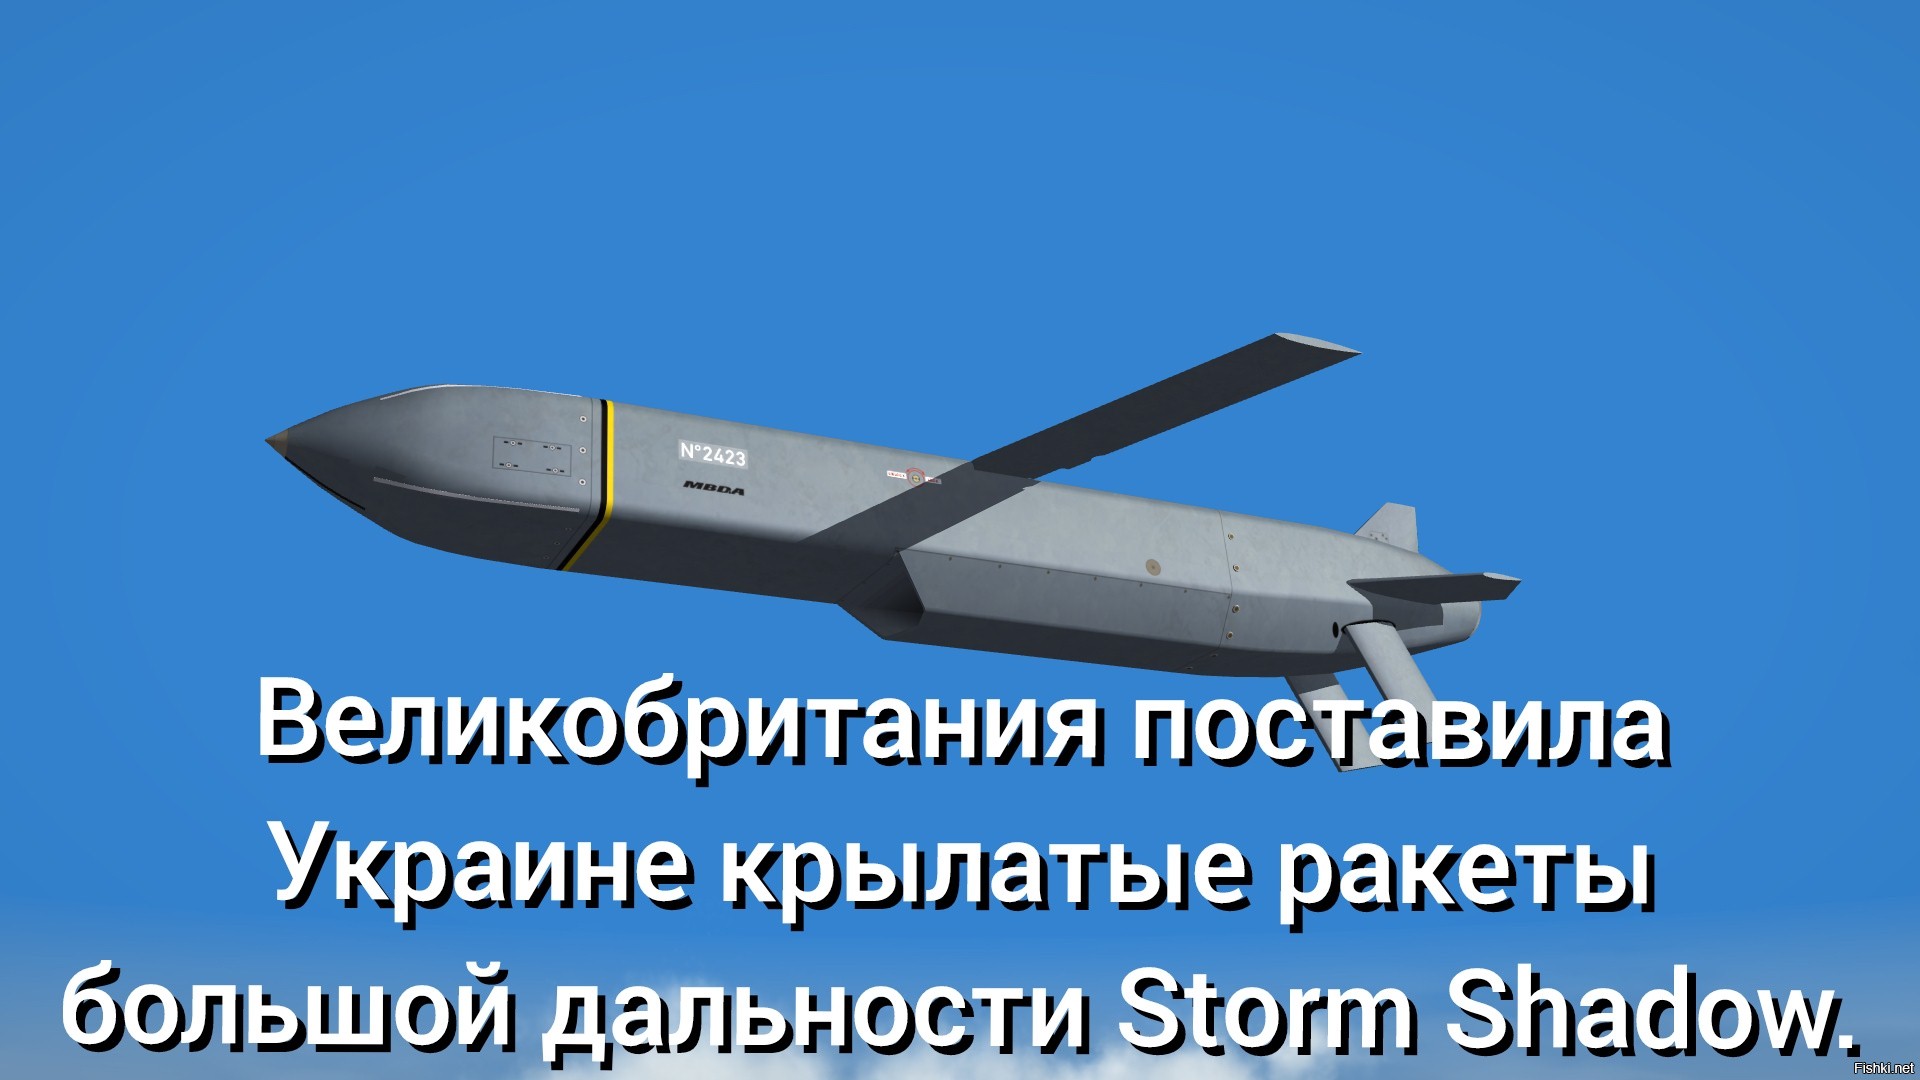 Ракеты шторм шедоу дальность. Storm Shadow крылатые ракеты. Крылатая ракета большой дальности. Российские крылатые ракеты. Украинские ракеты.